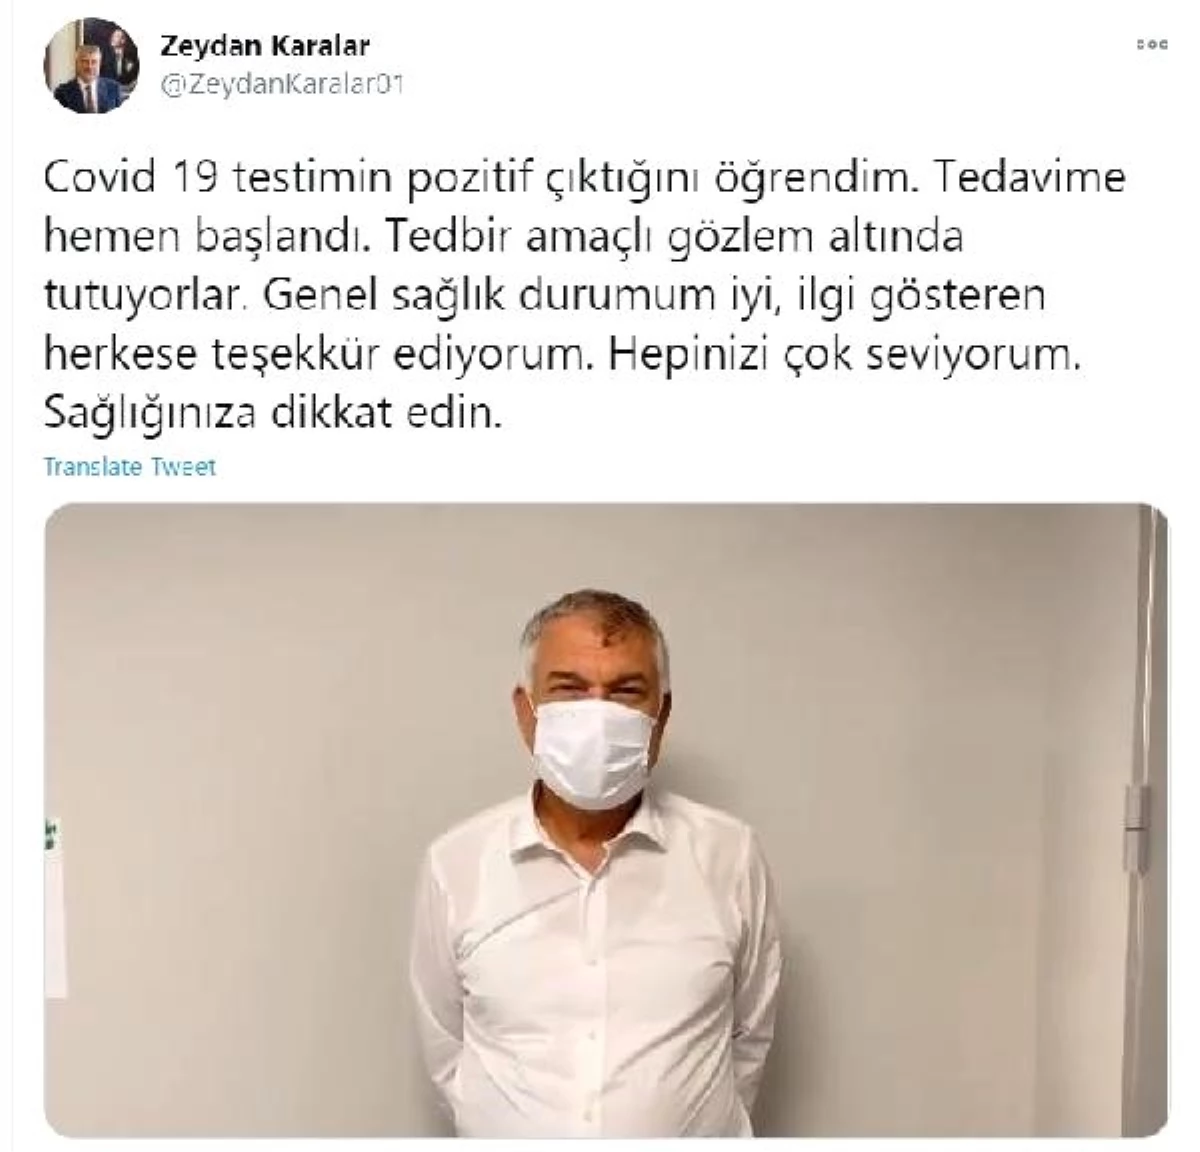 Son dakika haberleri! Adana Büyükşehir Belediye Başkanı Karalar, koronavirüse yakalandı (2)